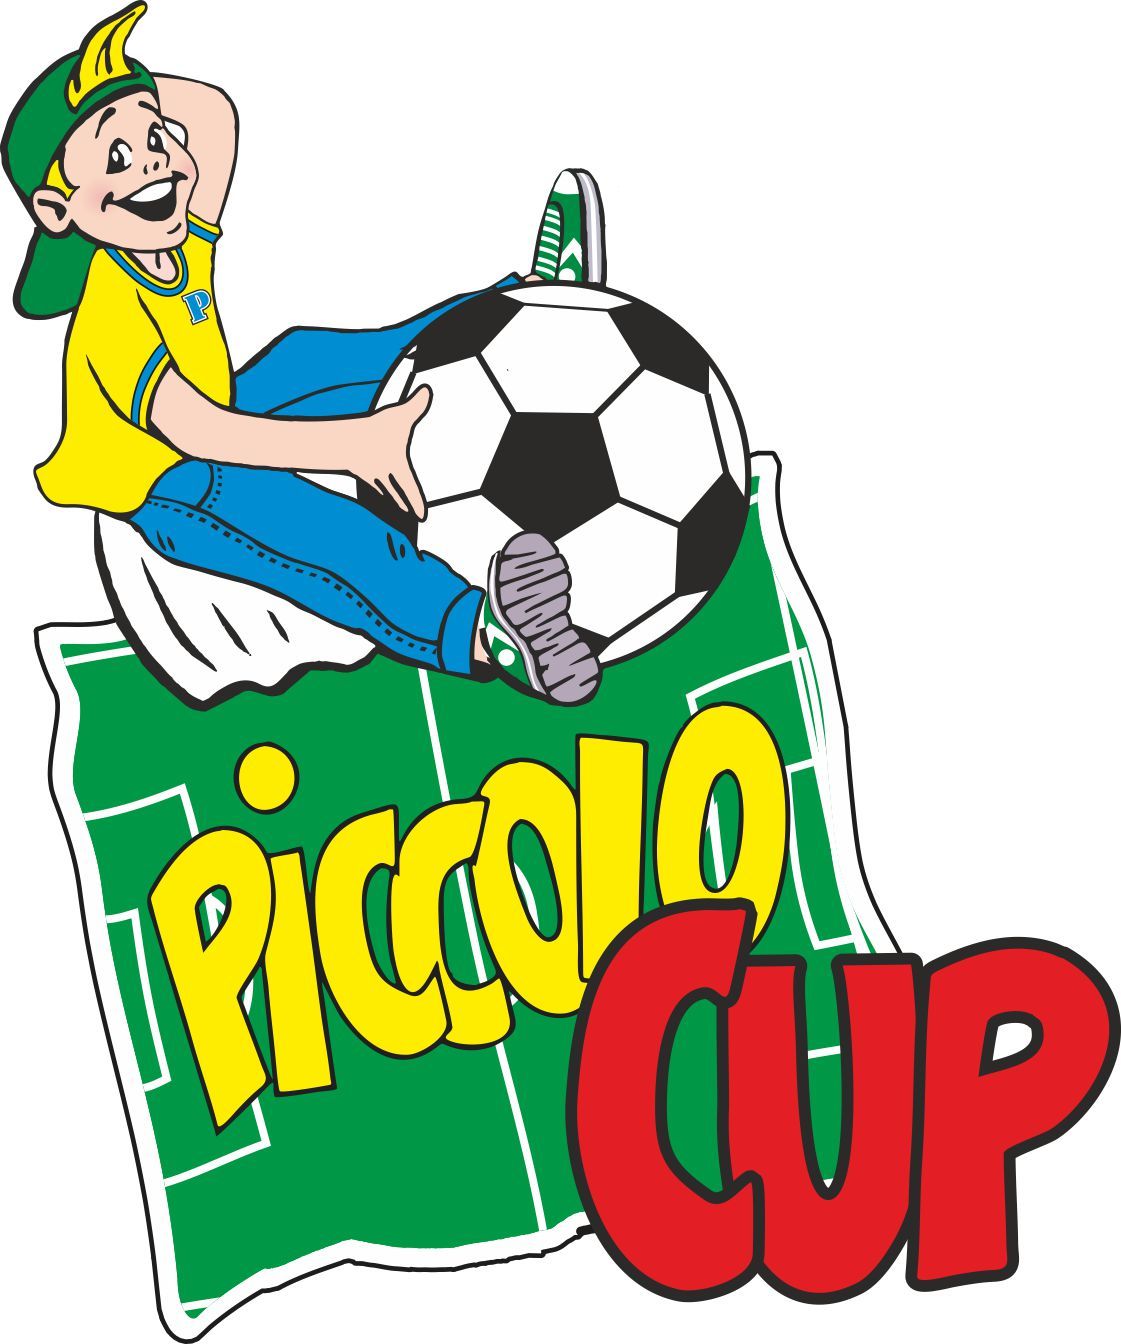 Druga edycja Piccolo Cup 2014 w Łodzi!